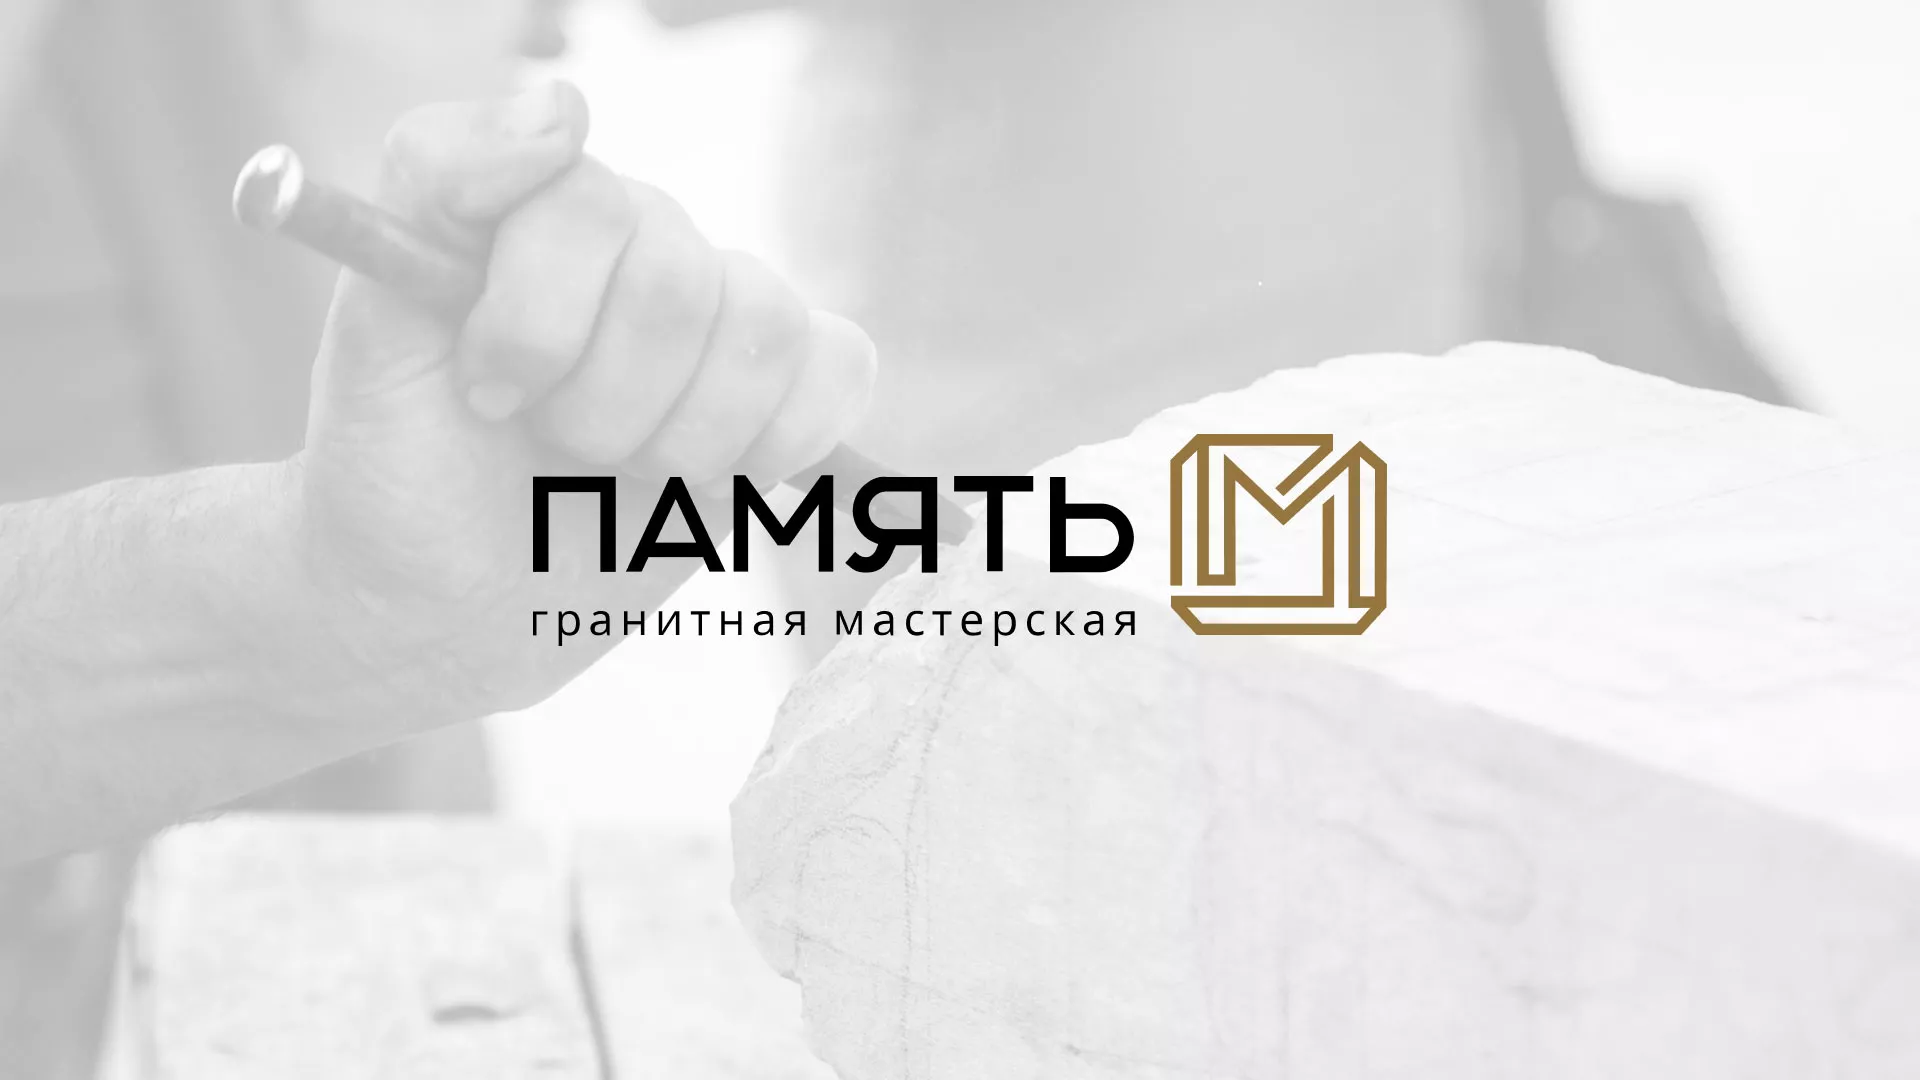 Разработка логотипа и сайта компании «Память-М» в Иваново